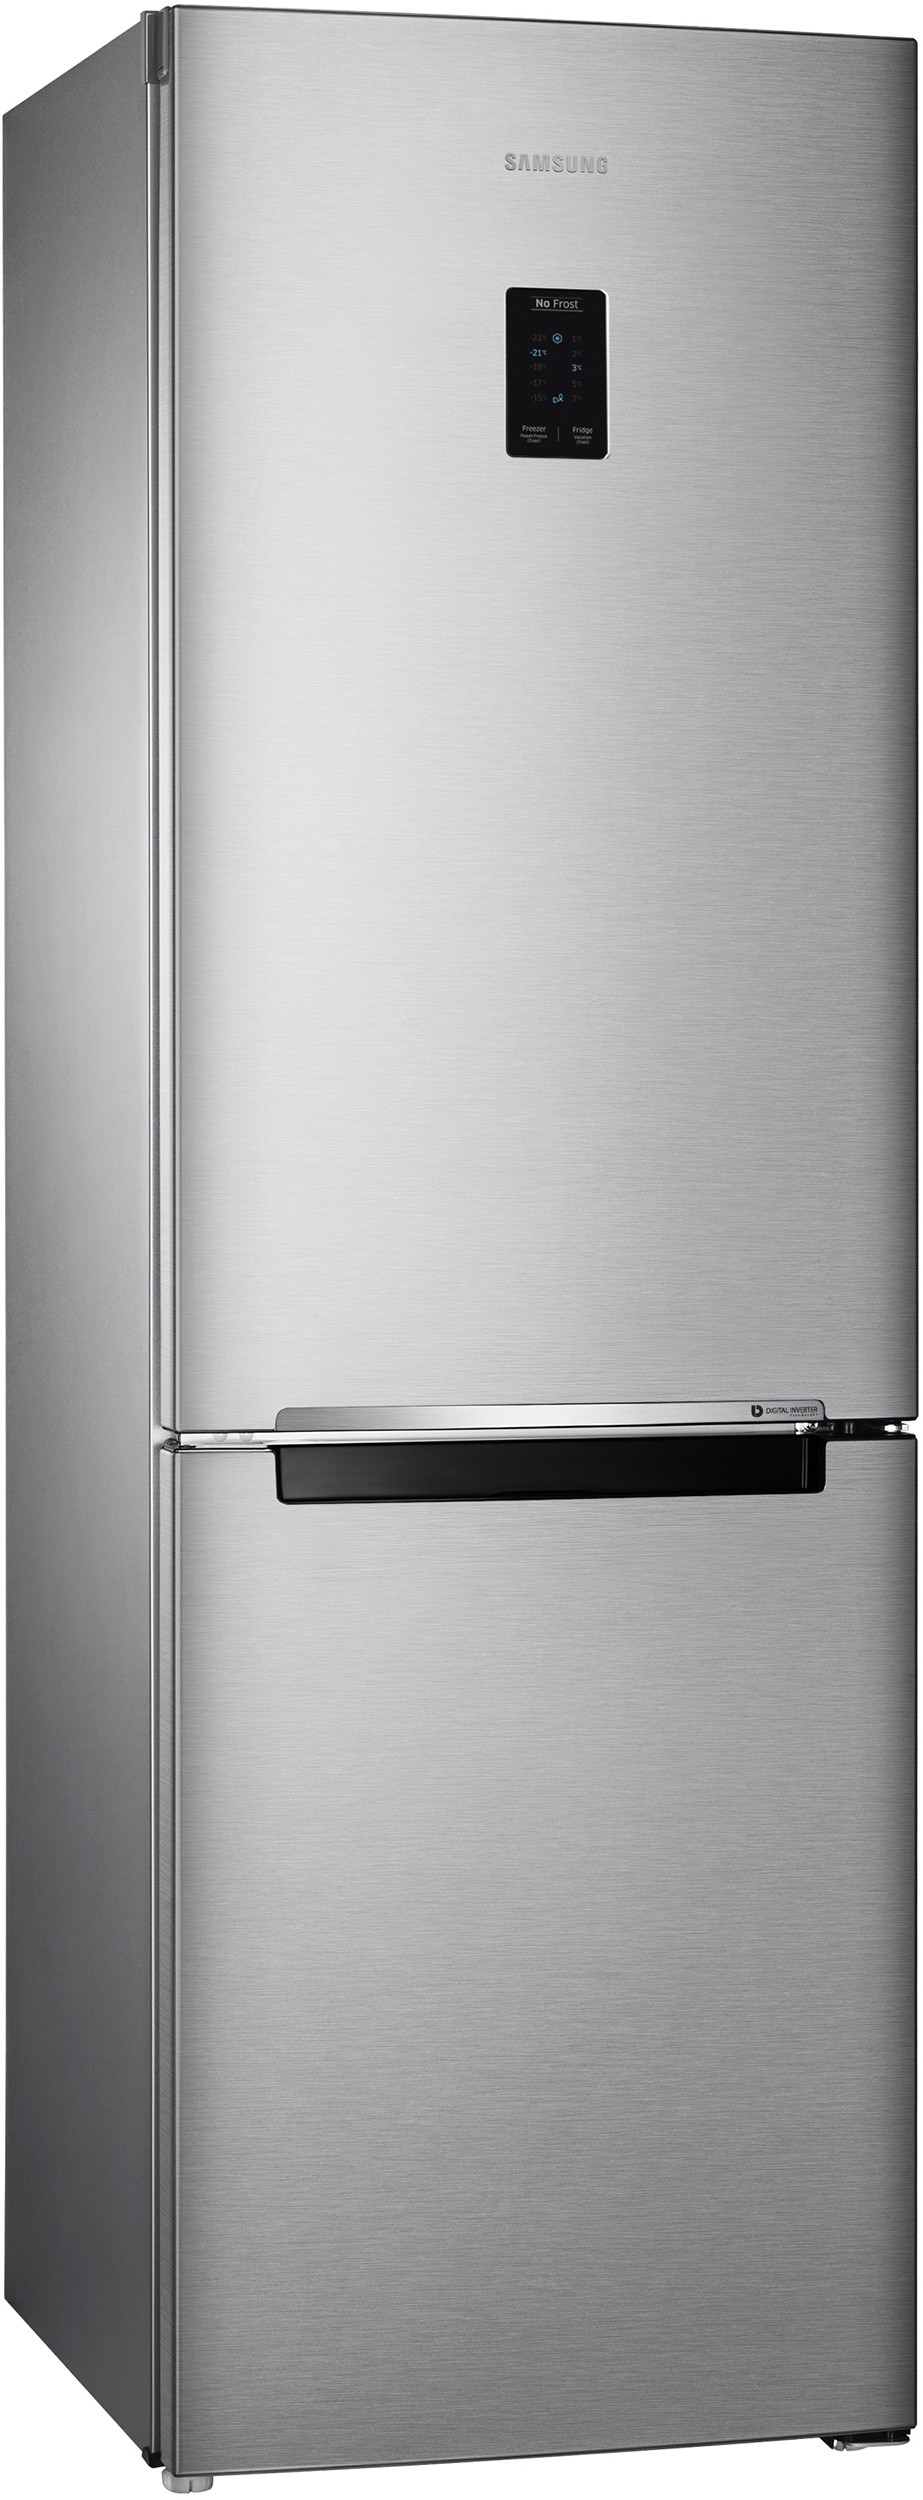 SAMSUNG Réfrigérateur congélateur bas Froid Ventilé Multi Flow 339L Gris - RB33J3205SA